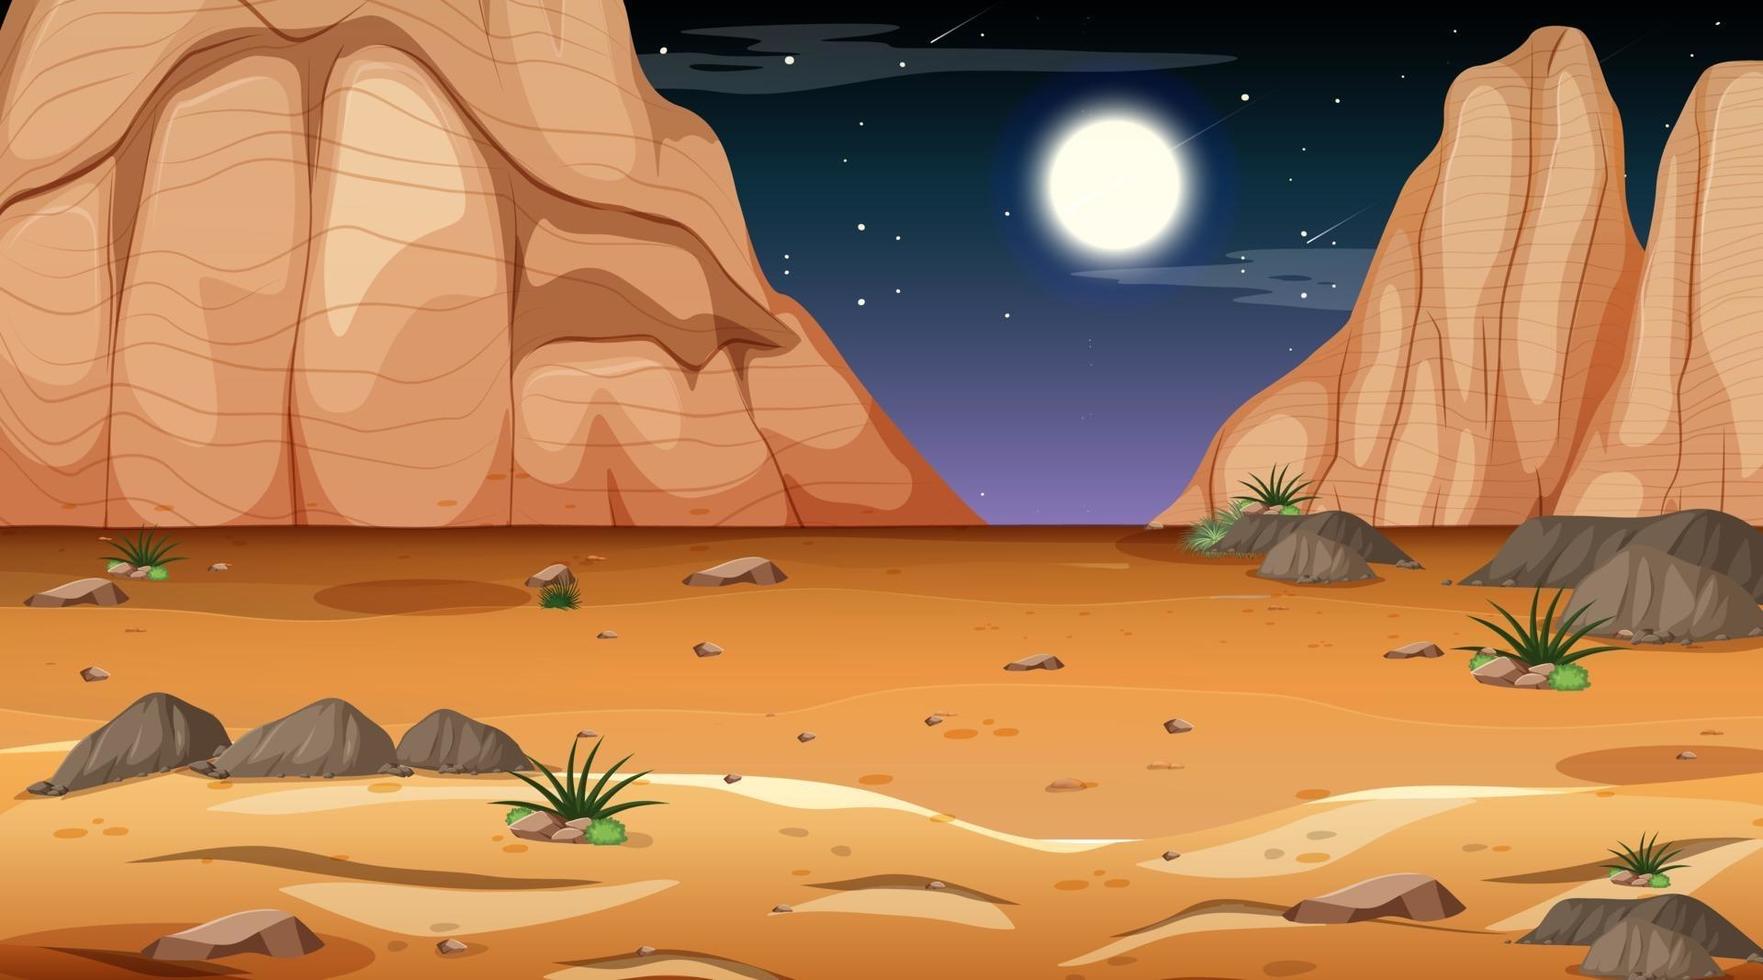 Desert forest landscape at night scene vector